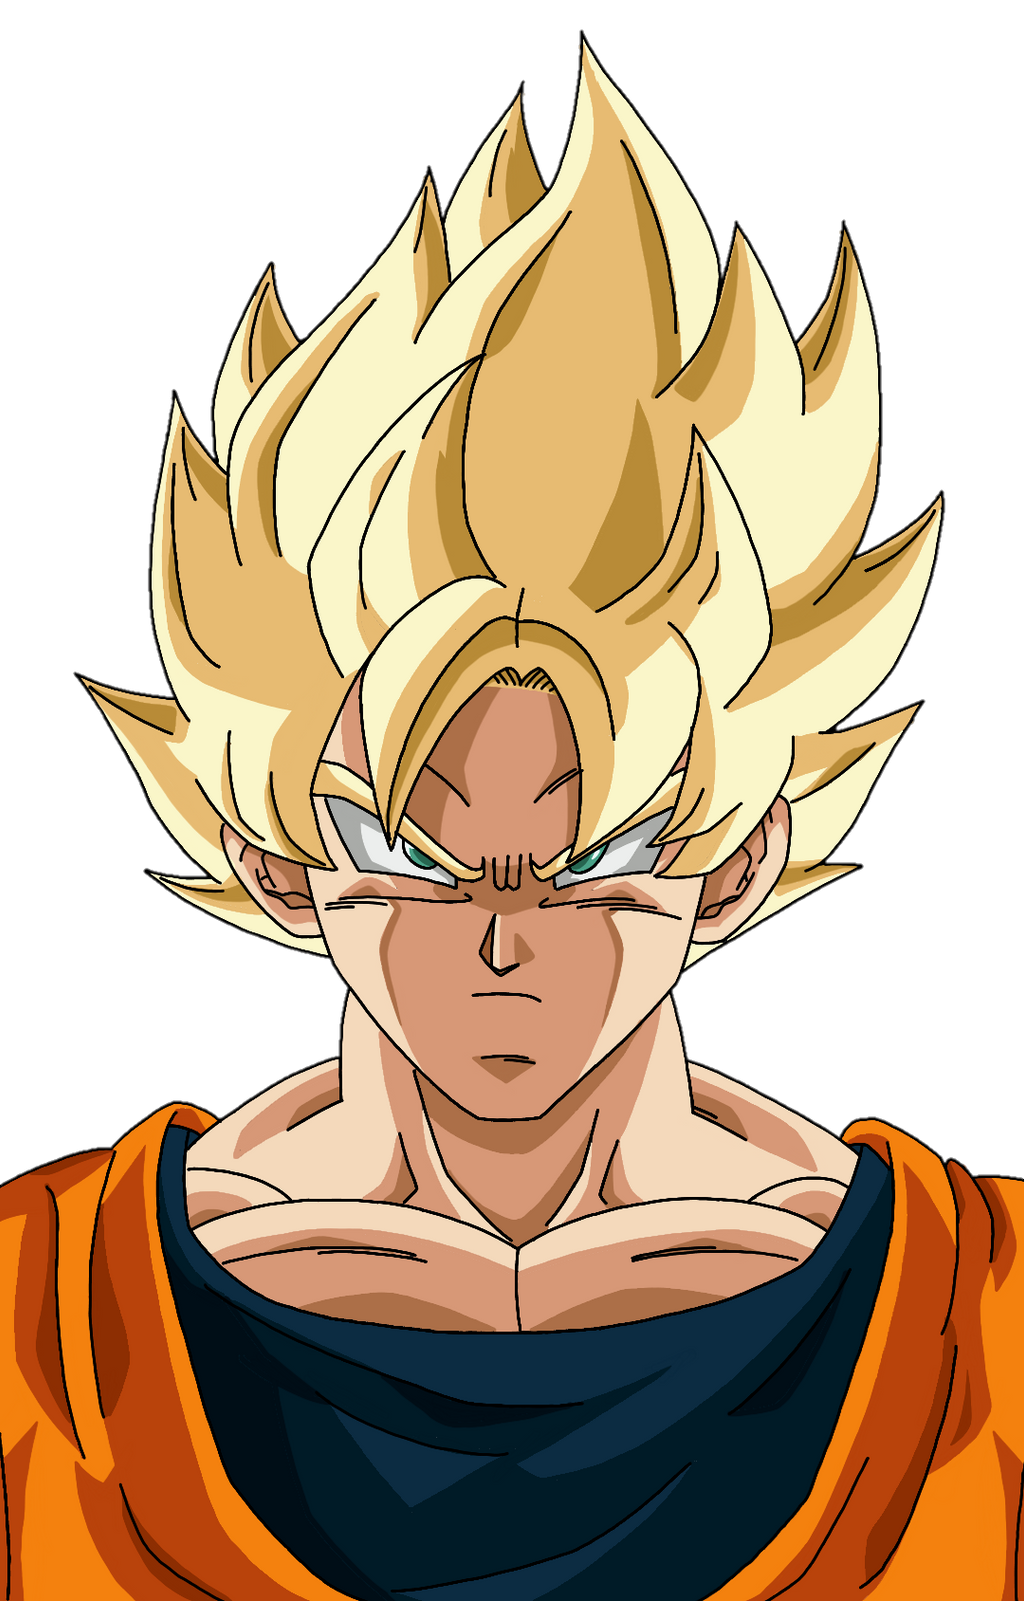 Super Saiyan 2 Goku by chanmio67 on DeviantArt